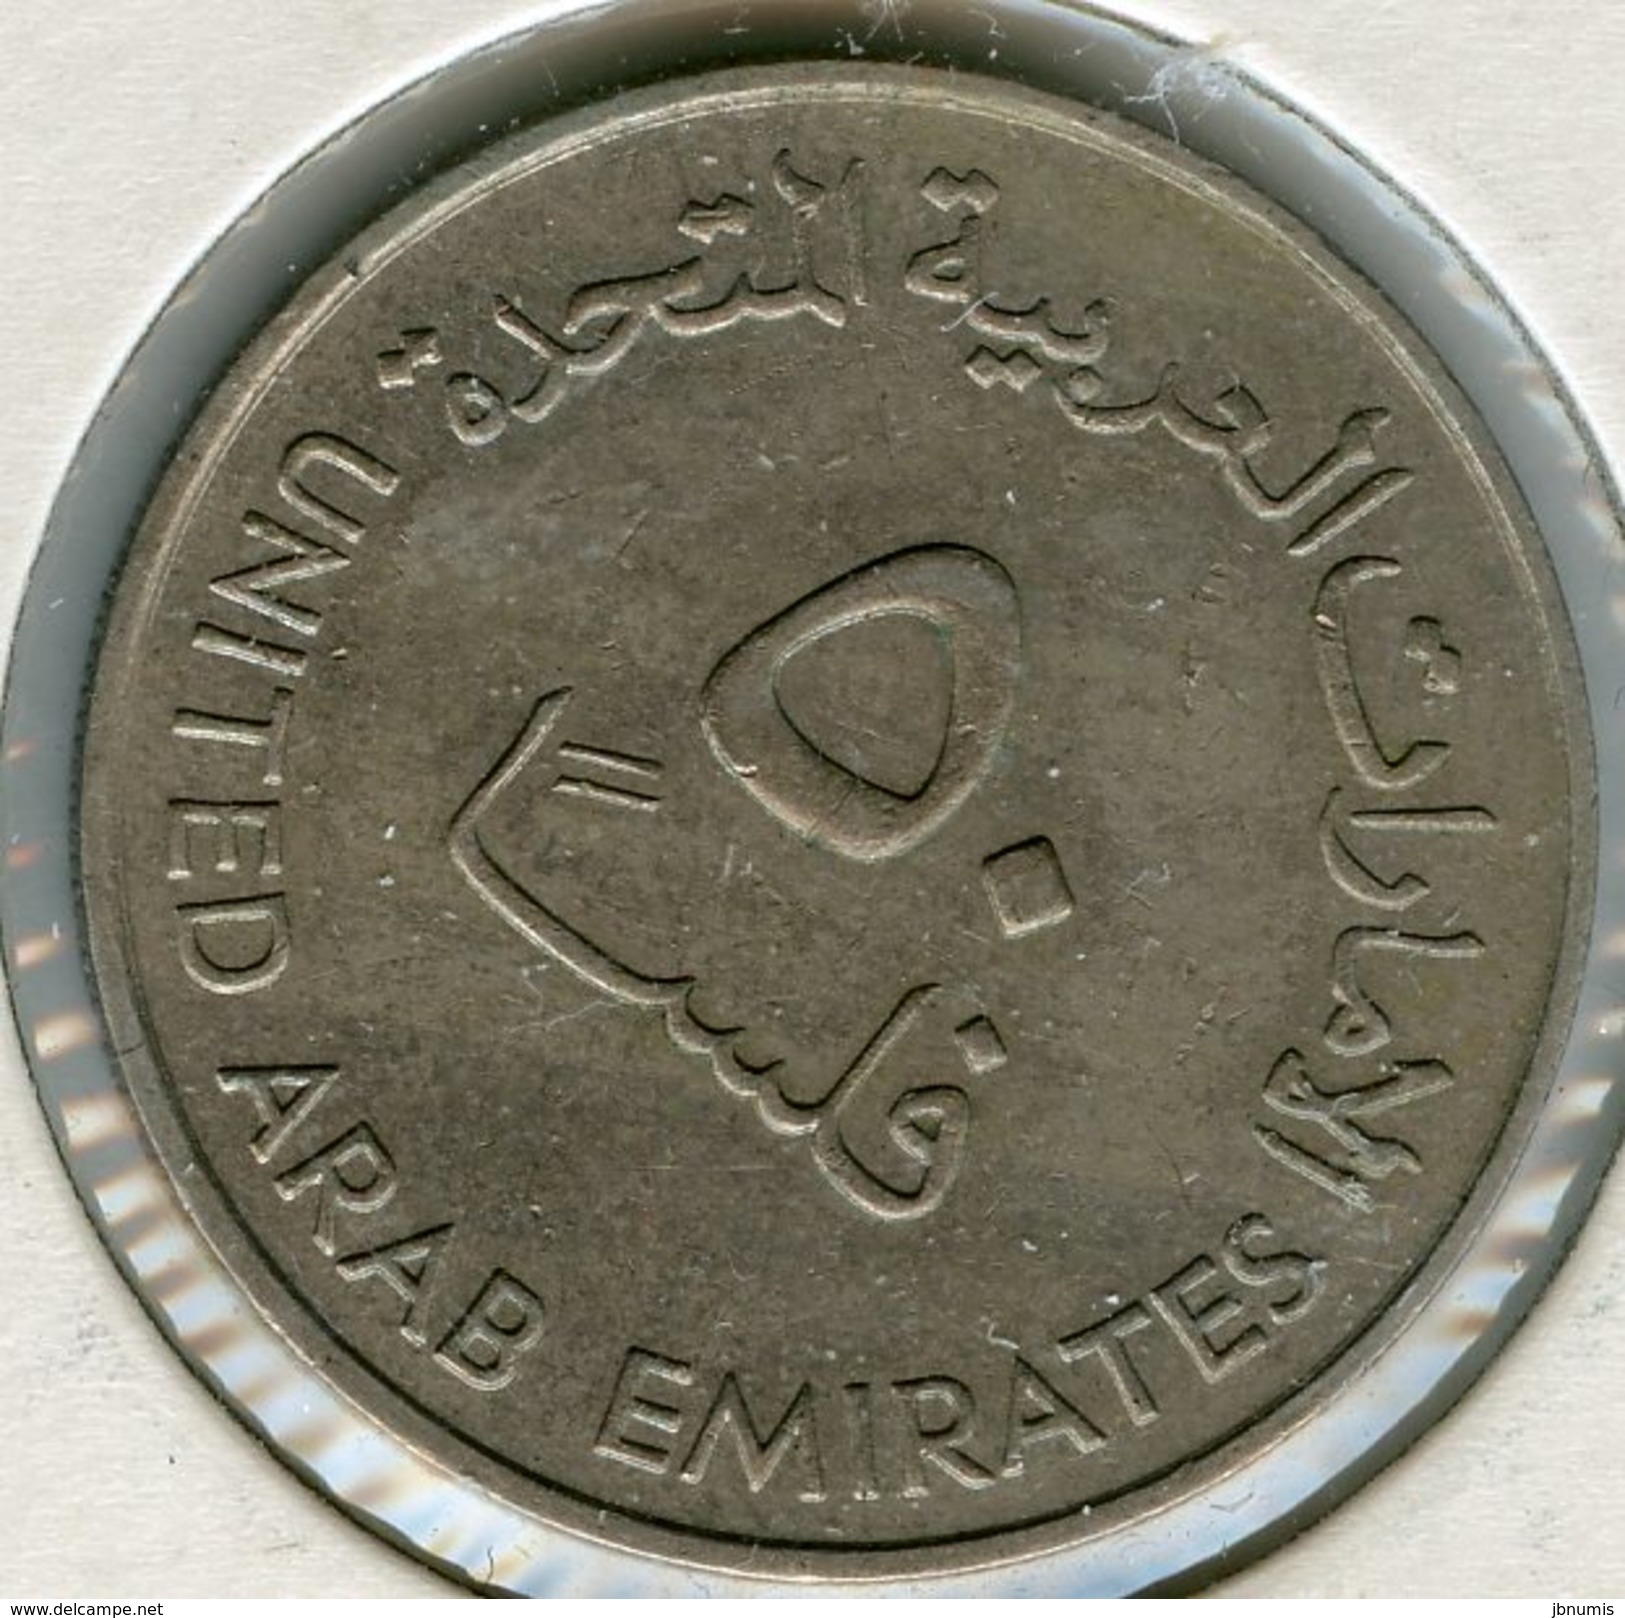 Emirats Arabes Unis United Arab Emirates 50 Fils 1402 - 1982 KM 5 - United Arab Emirates